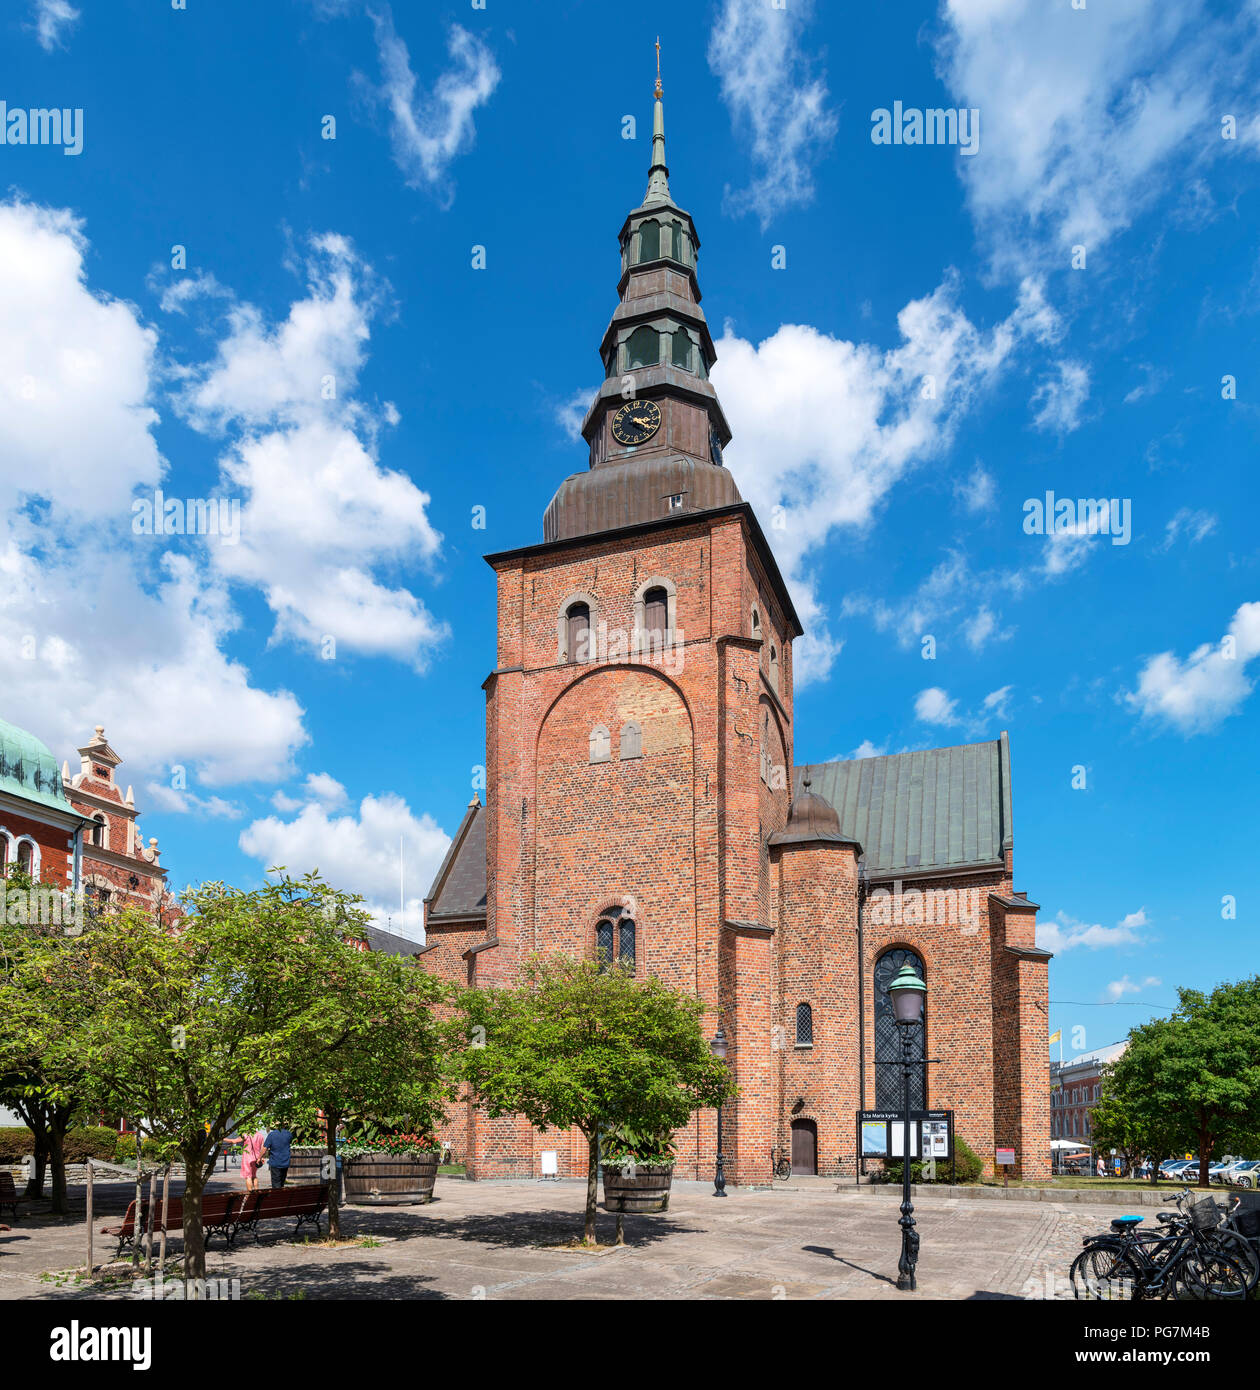 St Mary's Church (Sankta Maria Kyrka) in der alten Marktstadt Ystad, Scania, Schweden Stockfoto